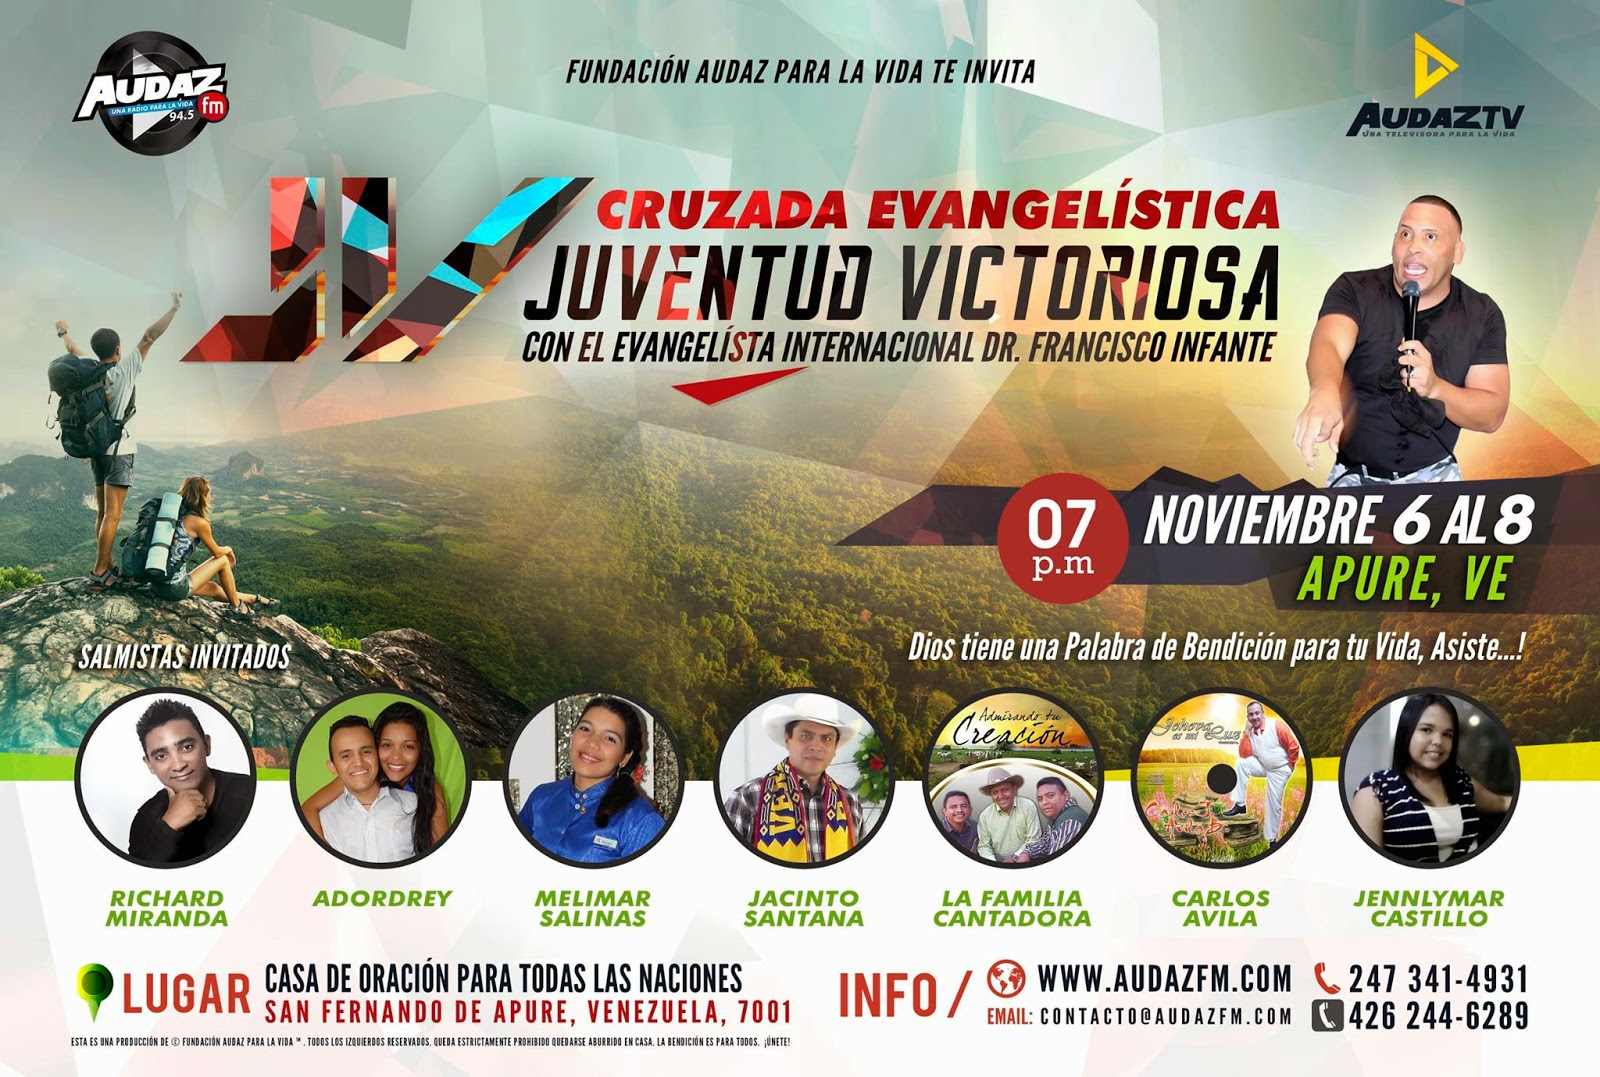 Cruzada evangelistica “Juventud Victoriosa”,  del 6 al 8 de noviembre con evangelista internacional Francisco Infante en Apure.